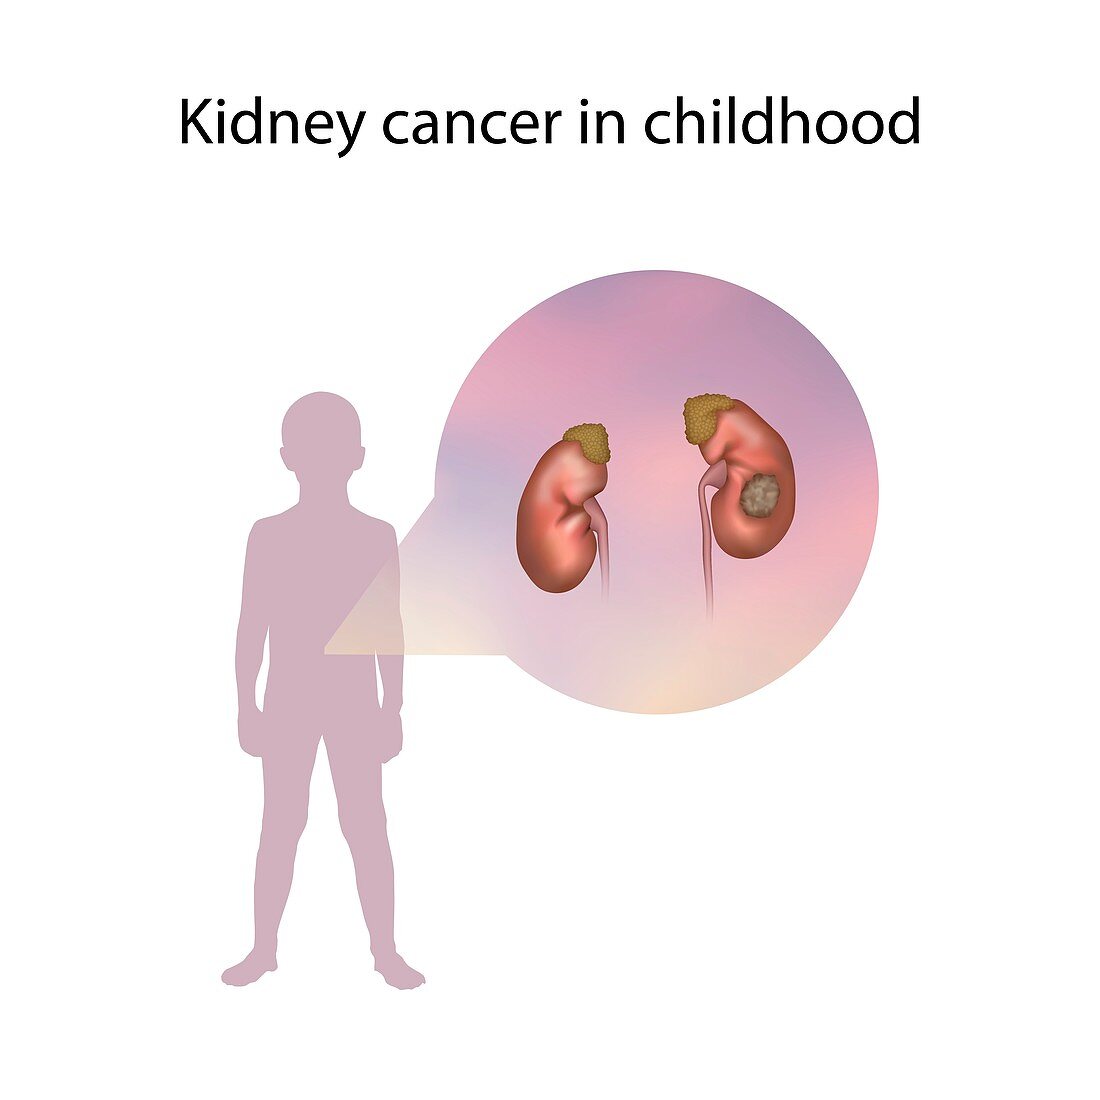 Kidney cancer in childhood,illustration